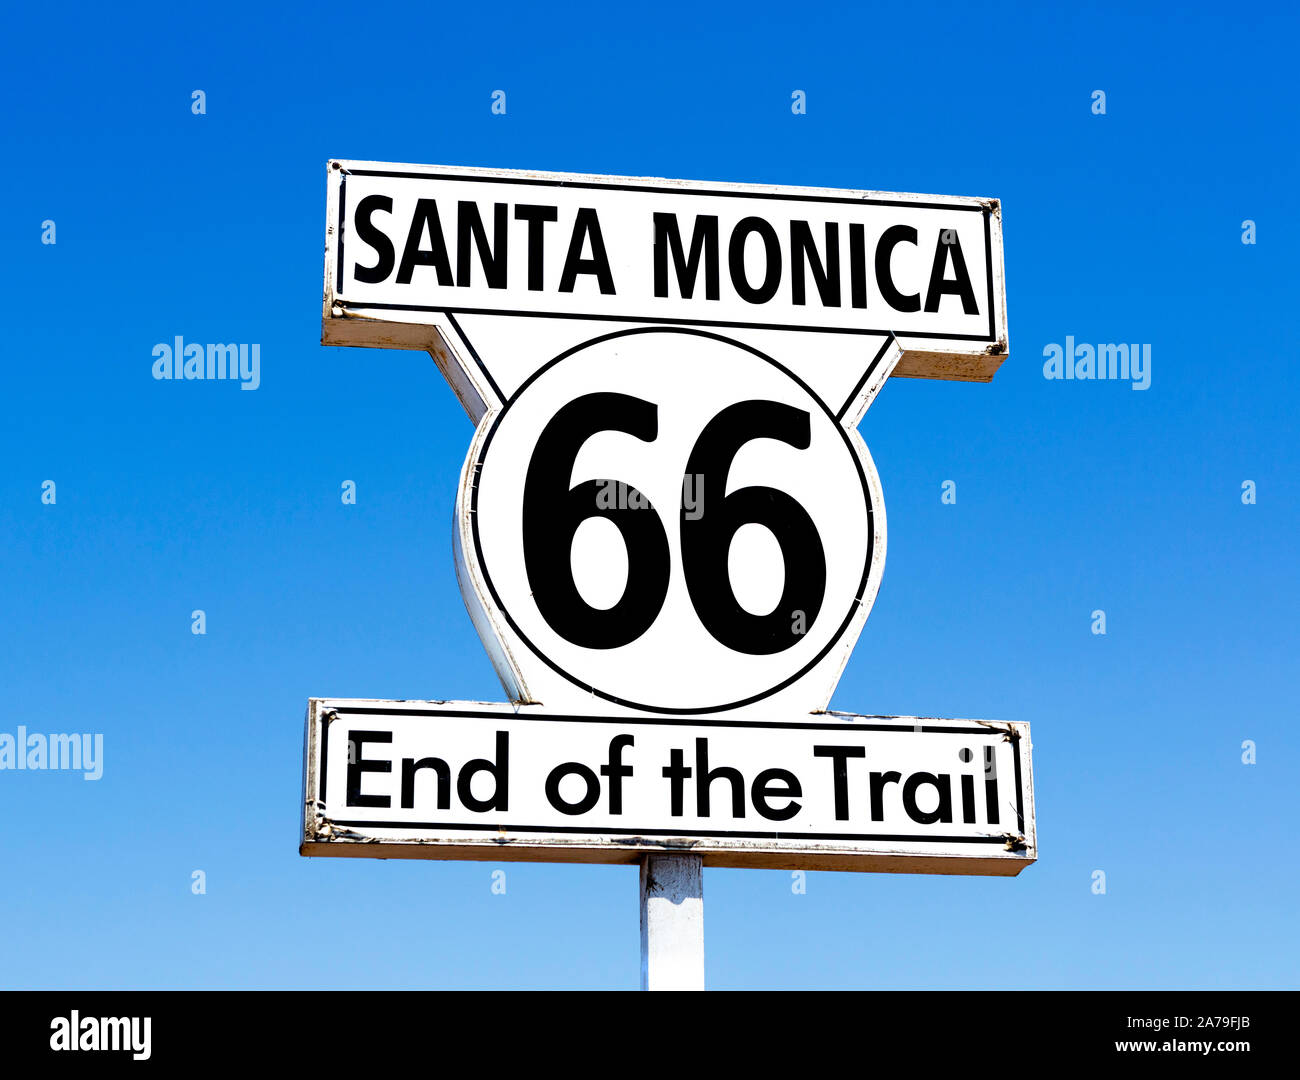 Inscrivez-vous pour la fin de la route 66 sur la jetée de Santa Monica, Santa Monica, Los Angeles, Californie, USA Banque D'Images